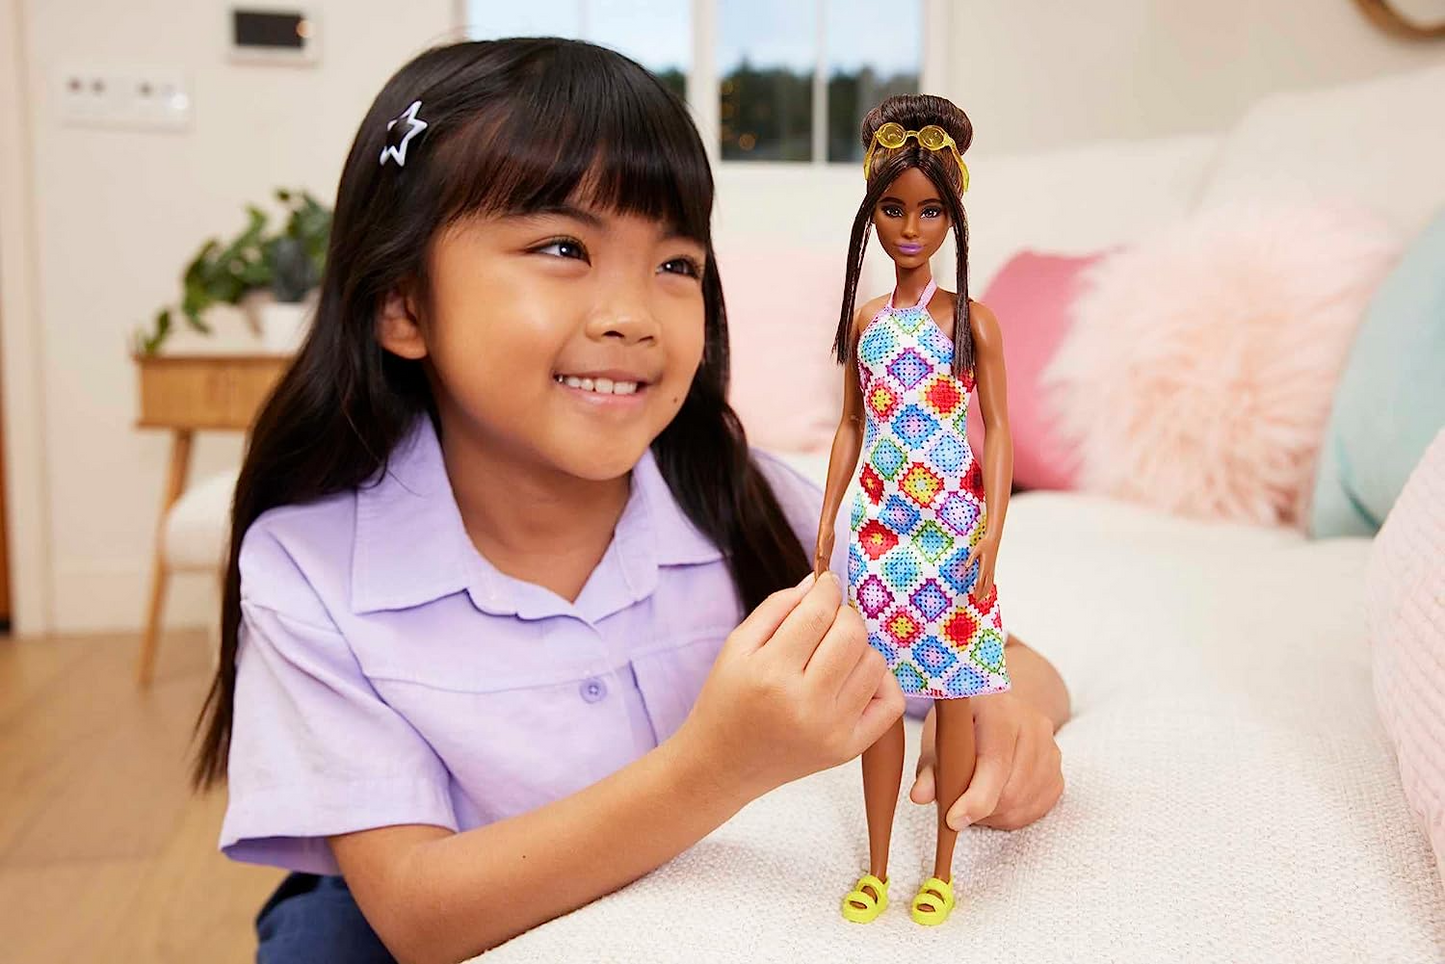 Barbie Boneca, Brinquedos infantis, Loira com tipo de corpo curvilíneo, Barbie Fashionistas, Roupa feminina com estampa de poder, Roupas e acessórios, HPF78